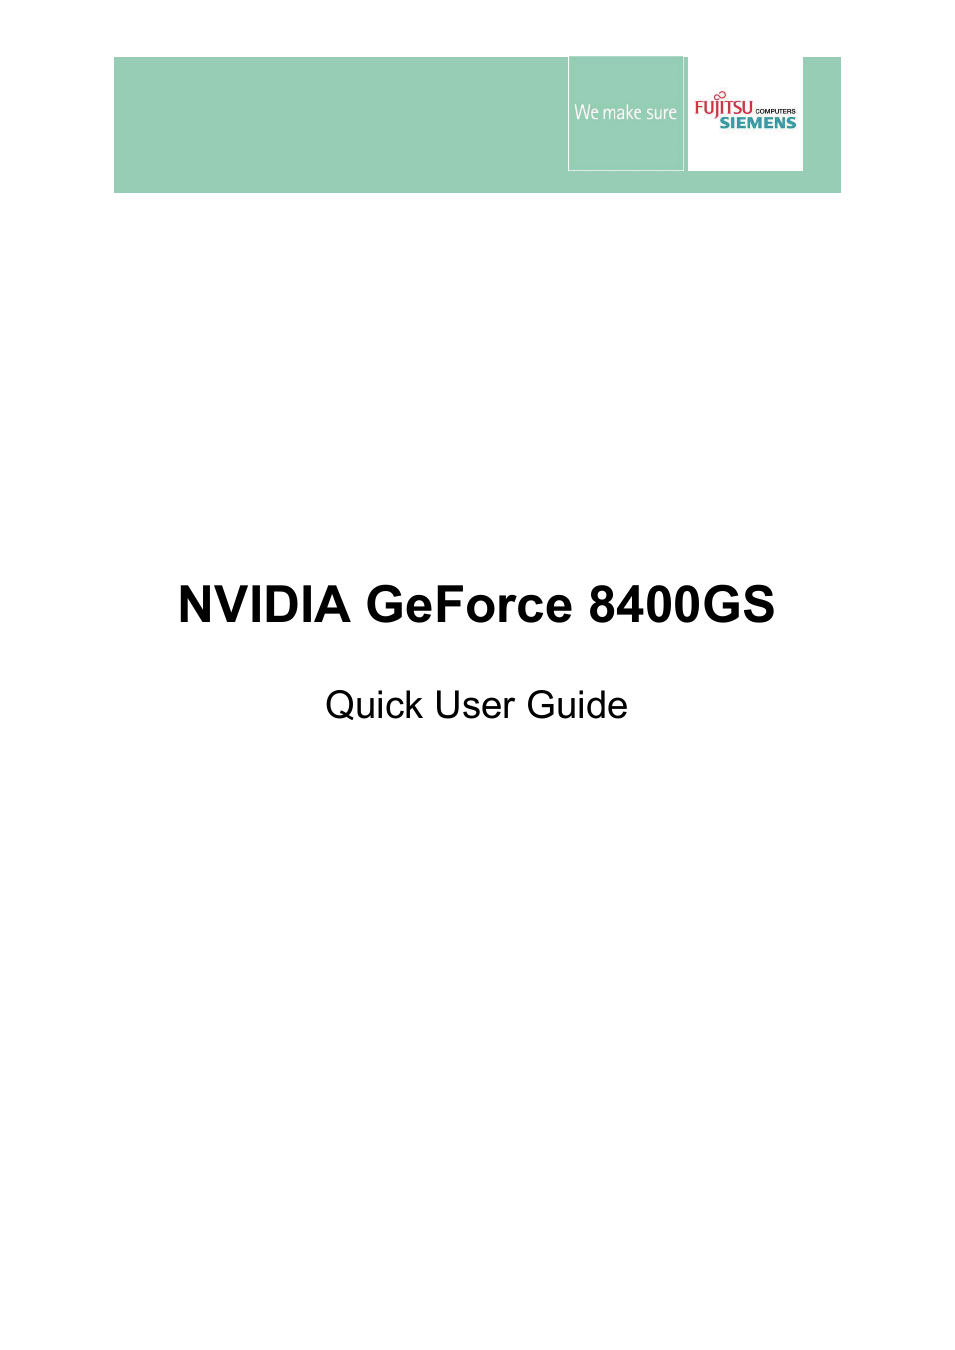 GeForce 8400GS